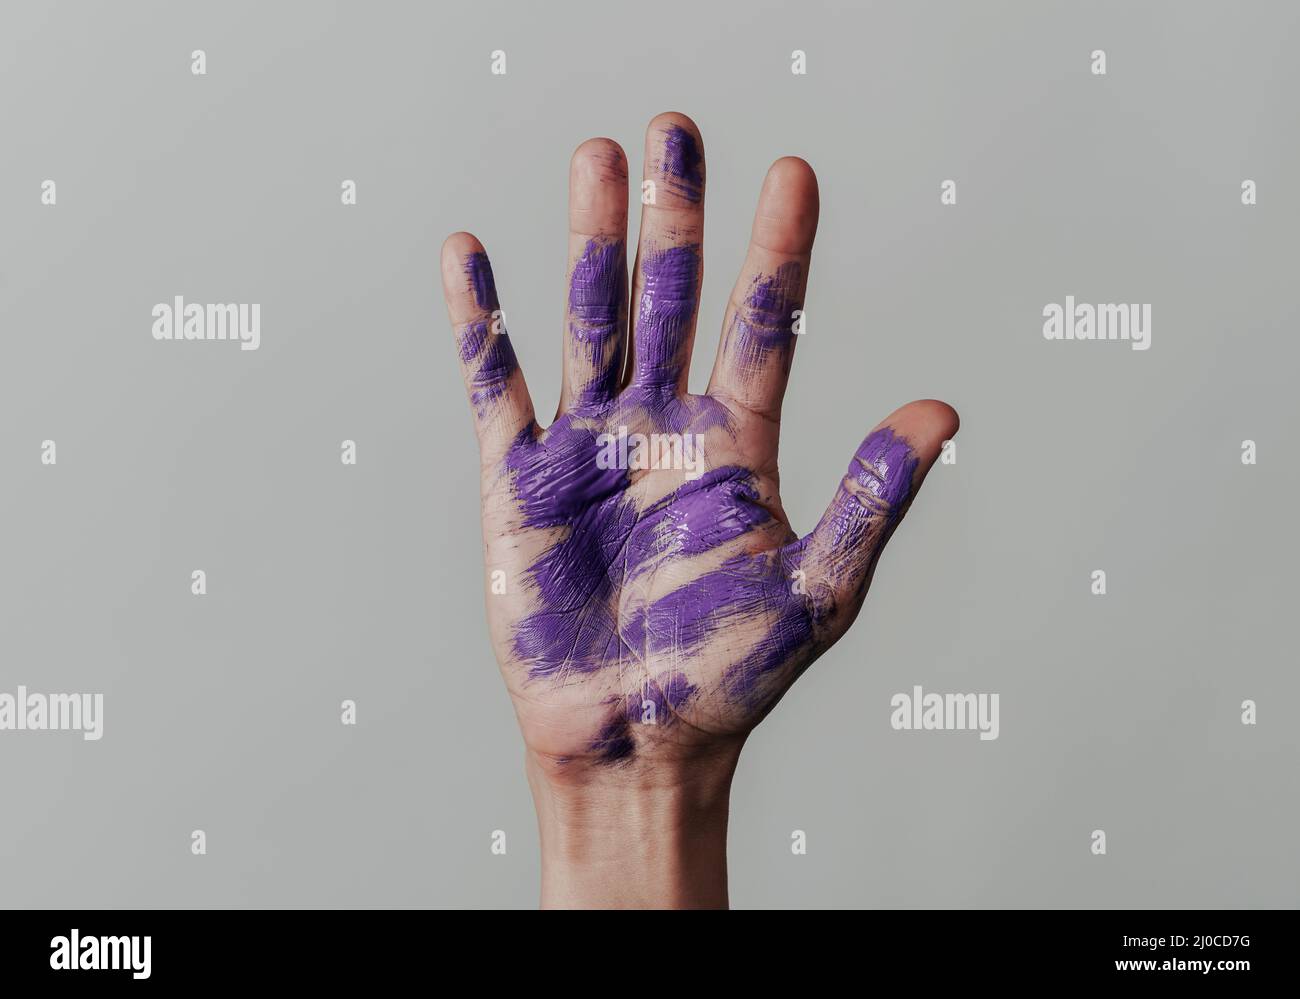 primo piano della mano sollevata di un uomo con alcune macchie di vernice viola nel palmo, su sfondo grigio chiaro Foto Stock